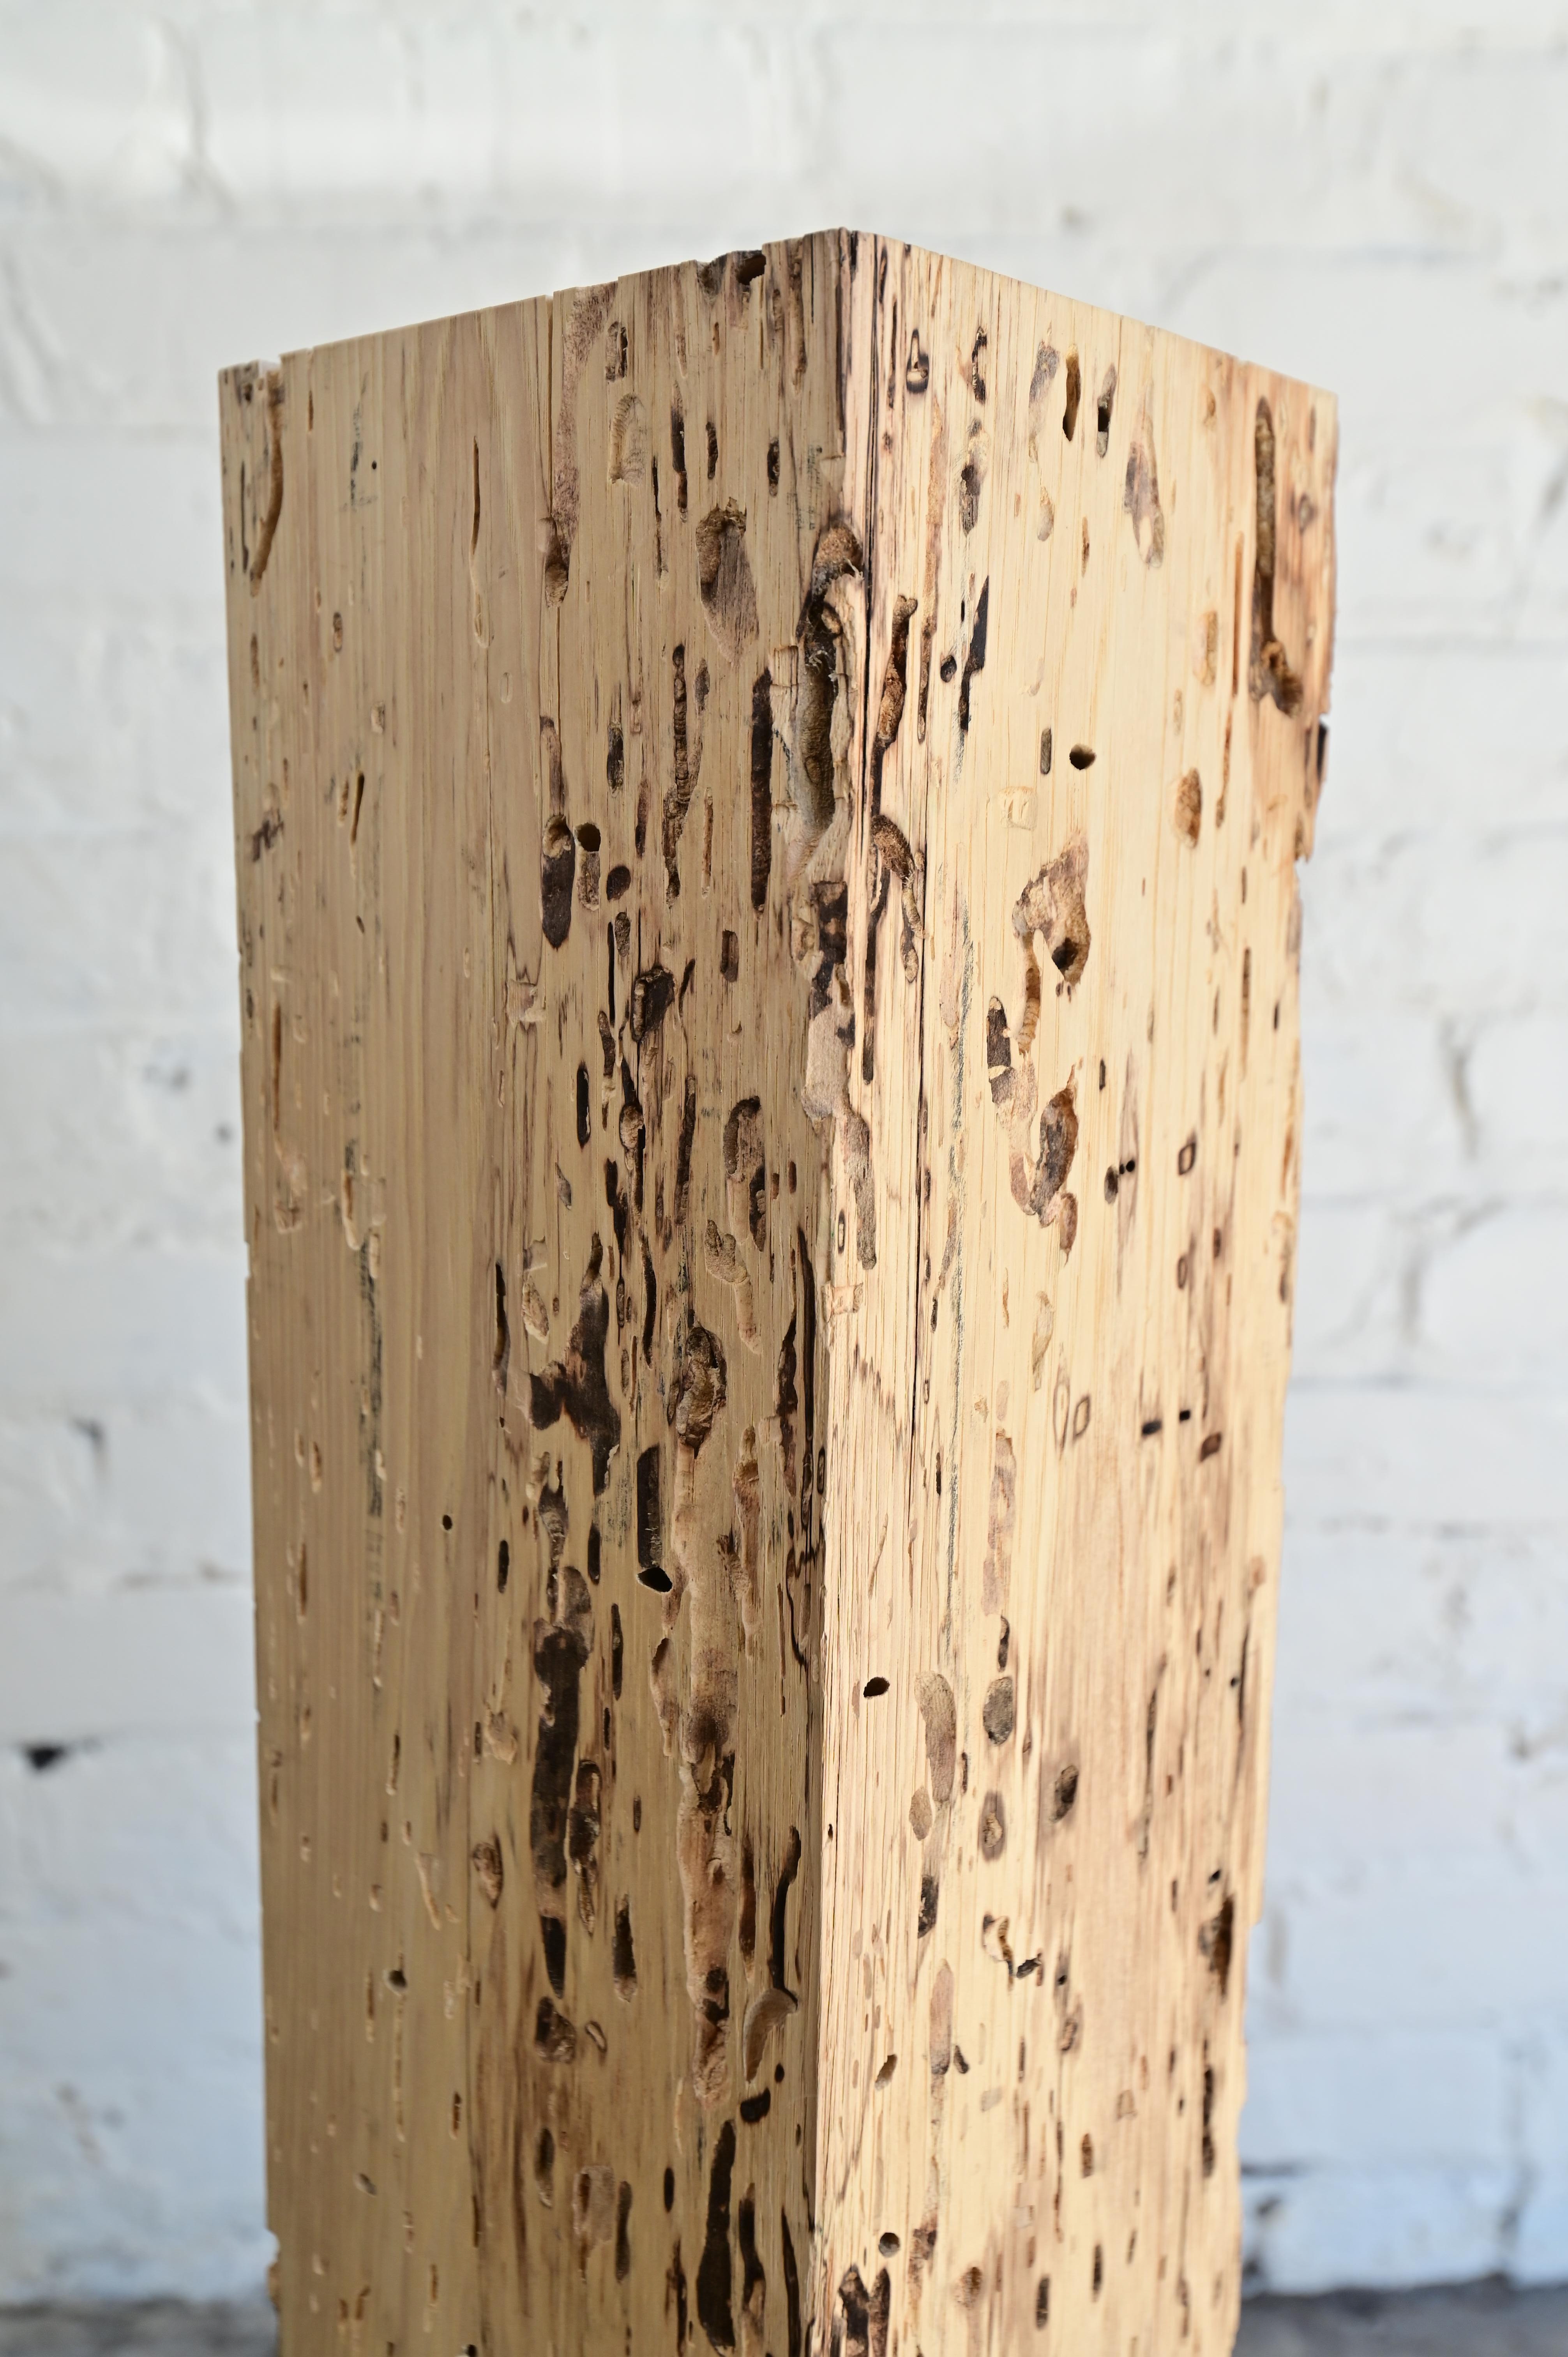 Primitive Brutalist columnar pedestal made from heavily bug eaten elm wood. 5.5